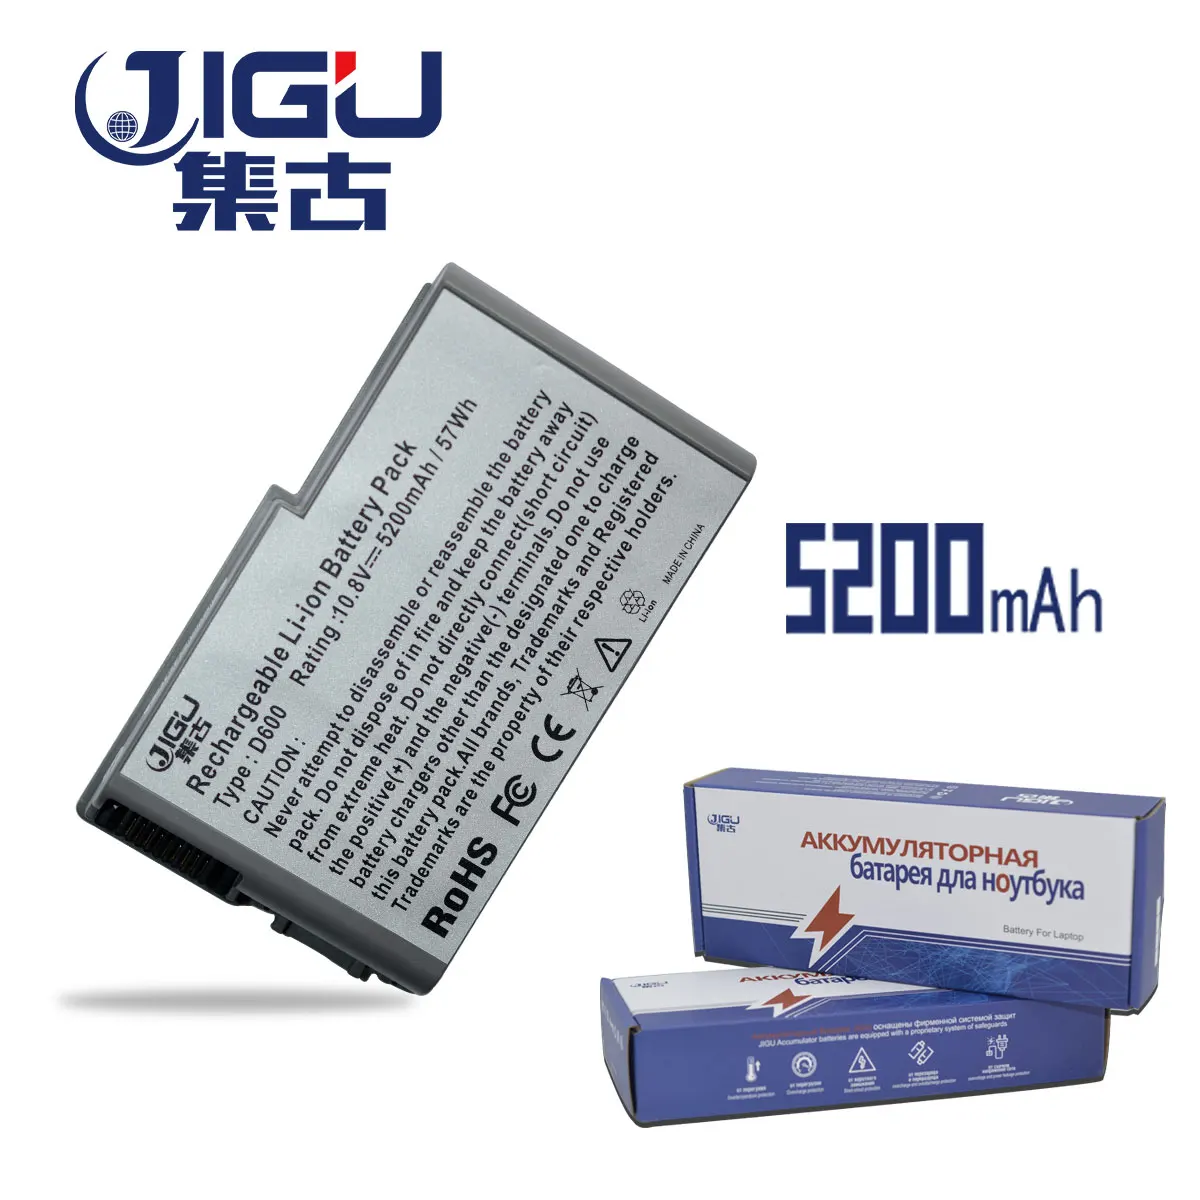 

JIGU Laptop Battery FOR Dell Inspiron 510m 600m Latitude D500 D505 D510 D520 D530 D600 D610 Precision M20 Mobile Workstation M20